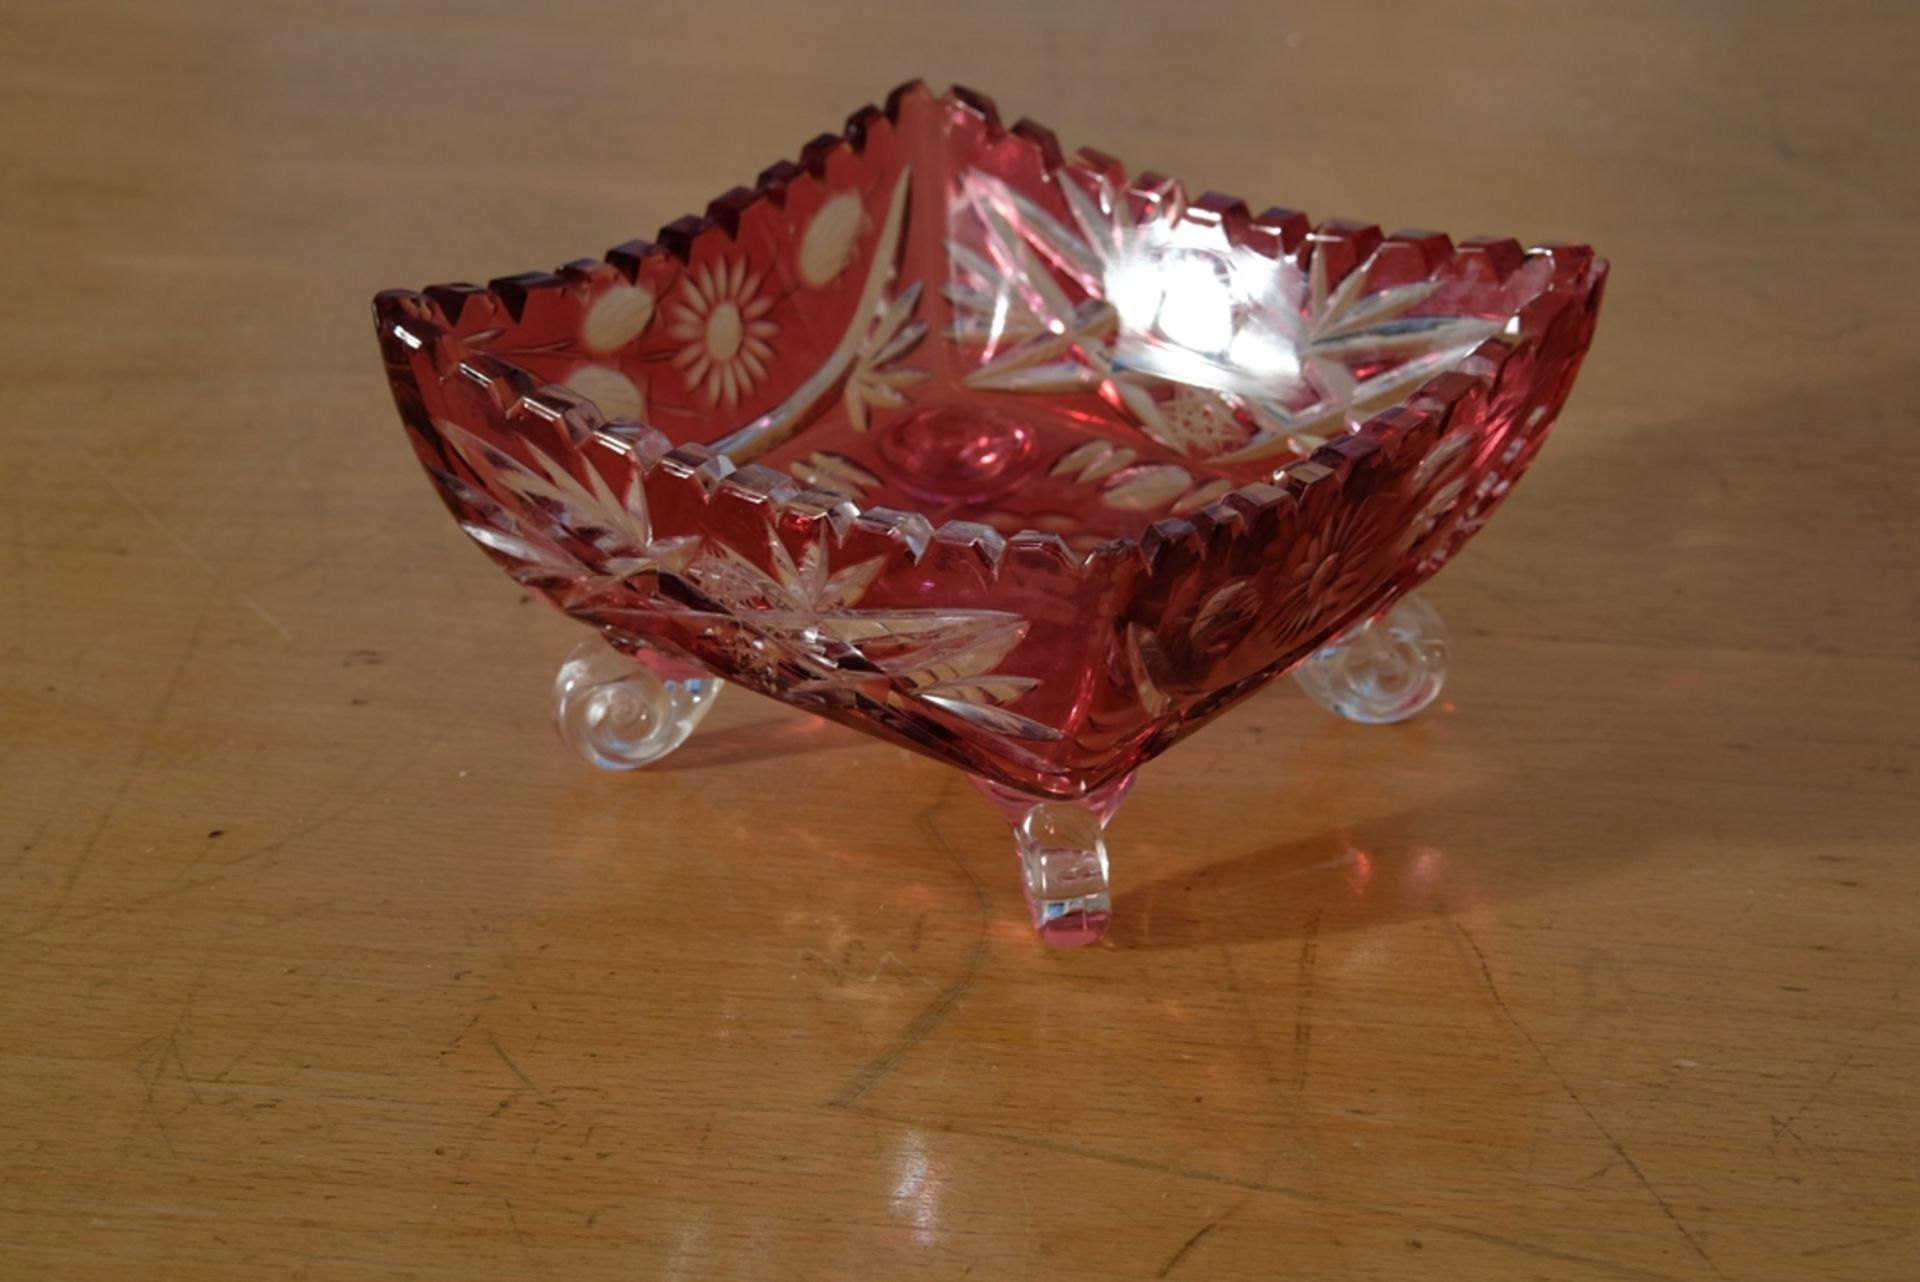 Glasschale, wohl Murano, rotes Glas, mit floralen Ornamenten graviert, 16 x 16 x 9 cm. - Bild 2 aus 2